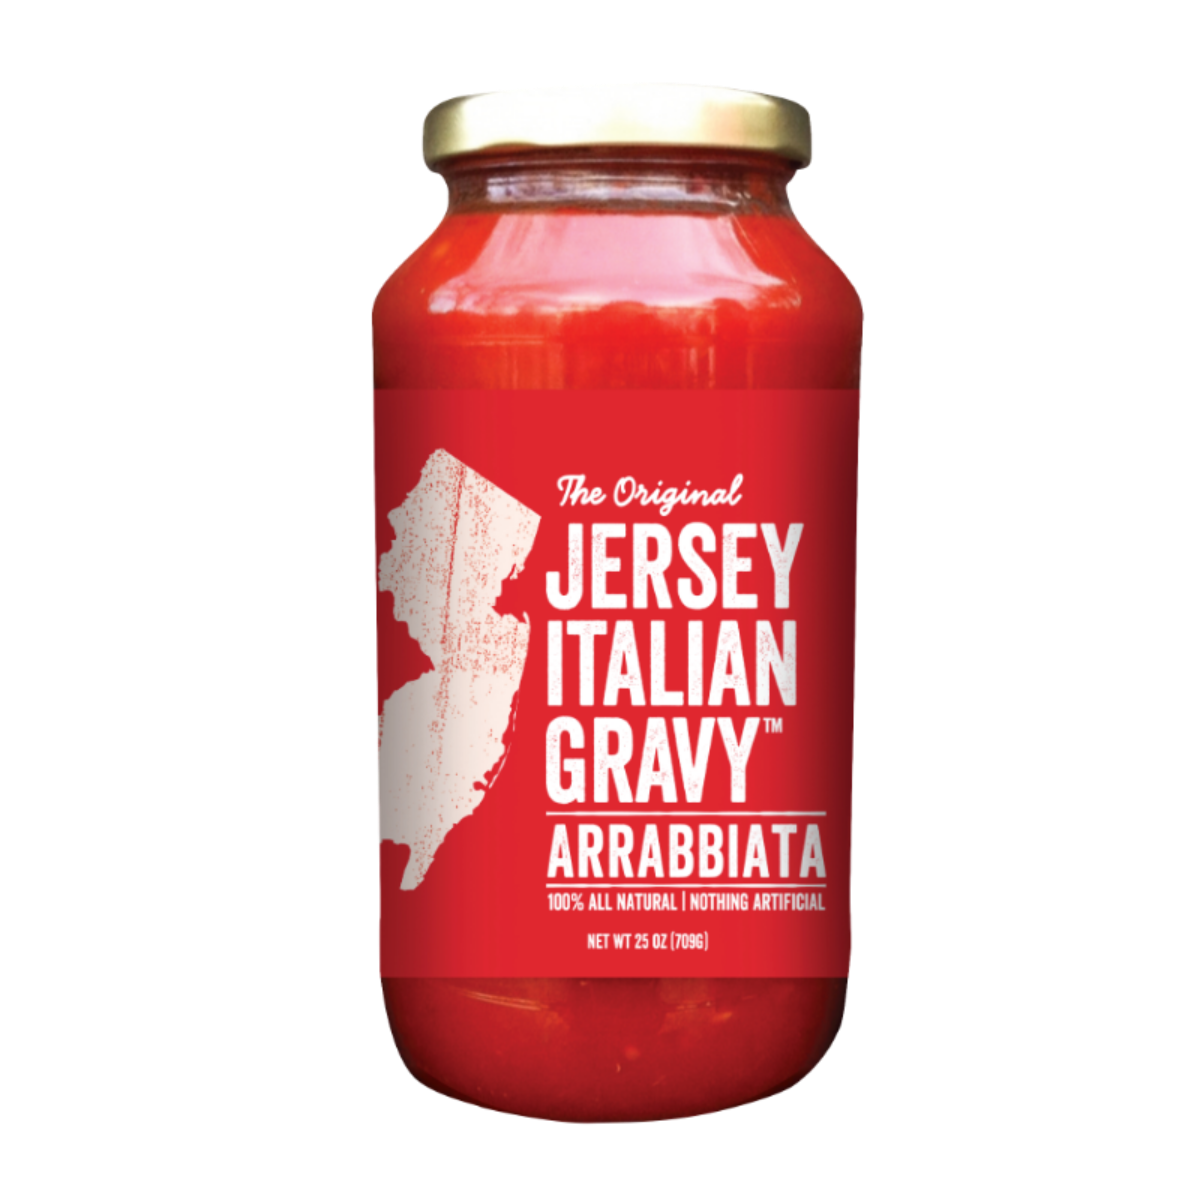 Jersey Italian Gravy Arrabbiata - Spicy Pasta Sauce!